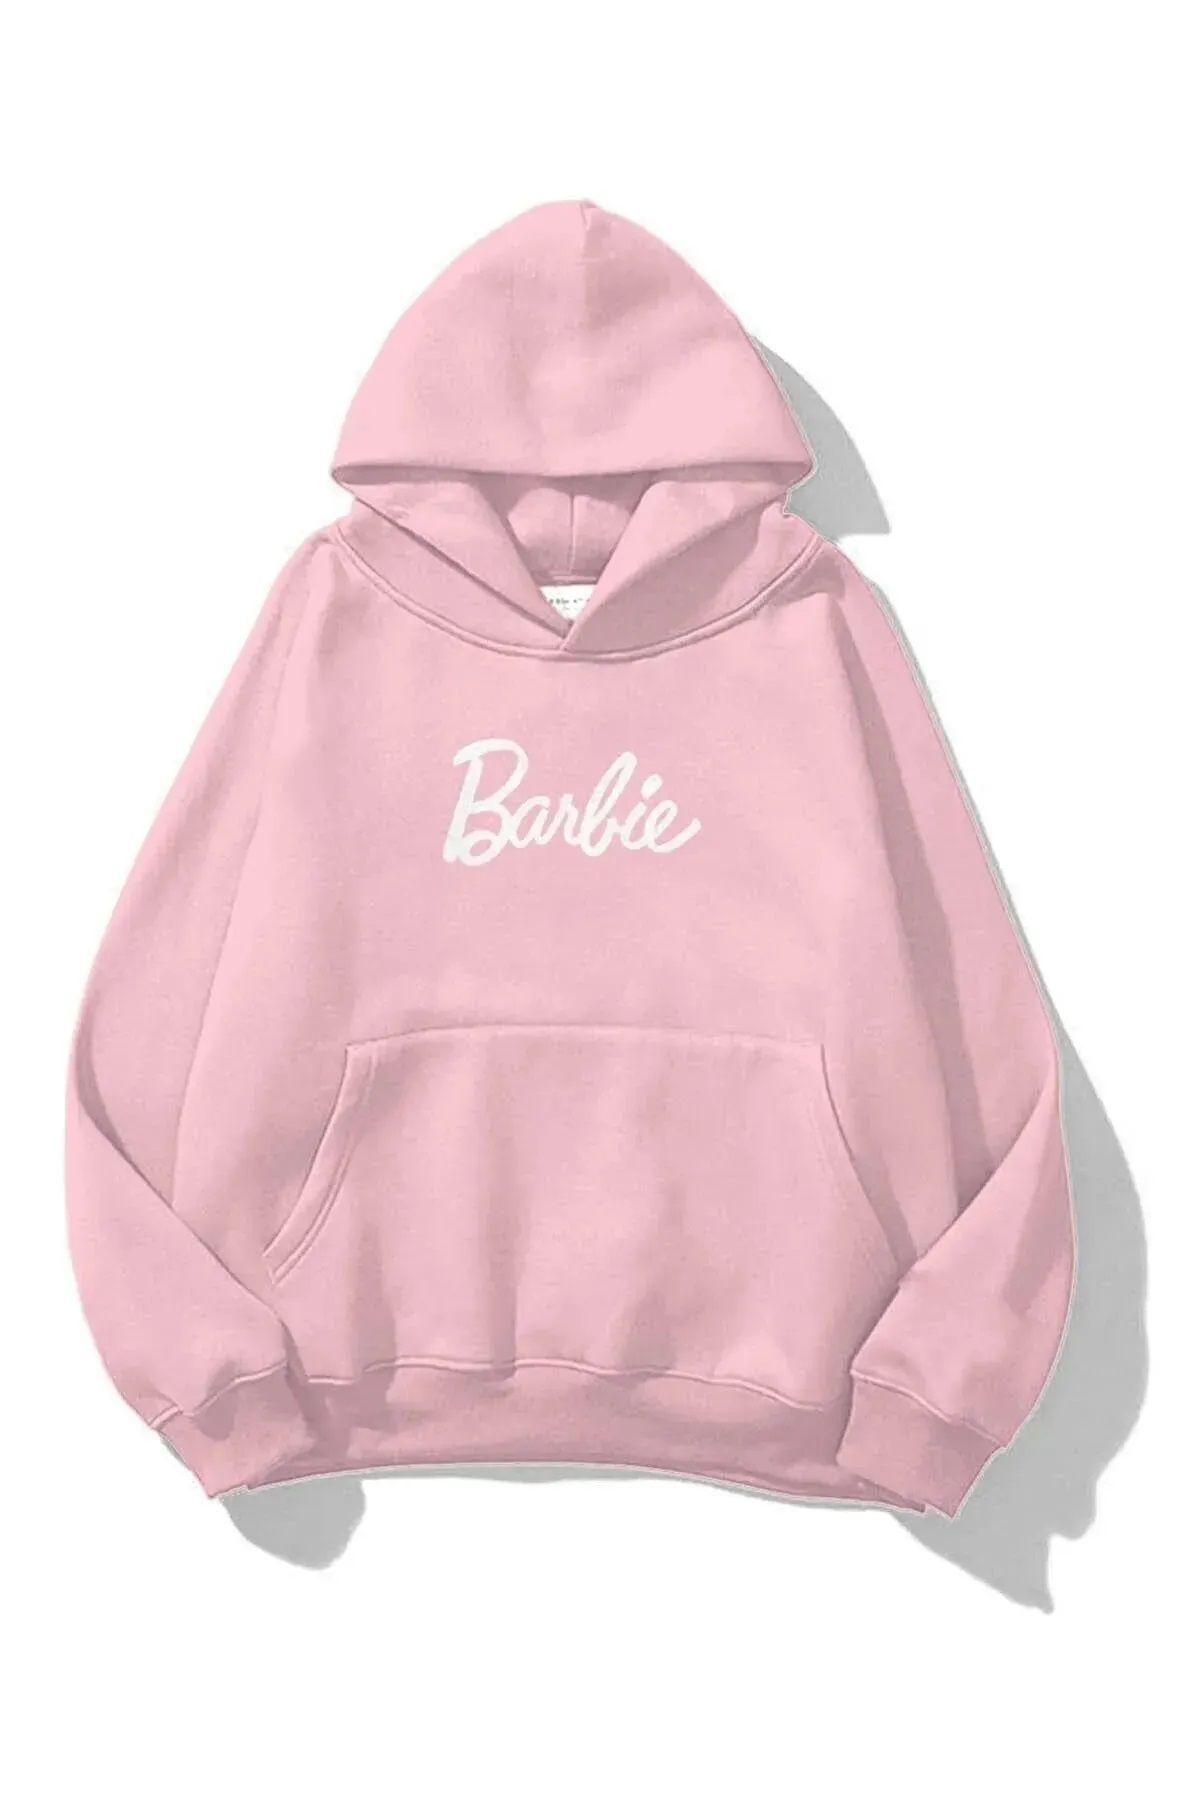 VOLT CLOTHİNG Women's Barbie Printed Sweatshirt - Trendyol